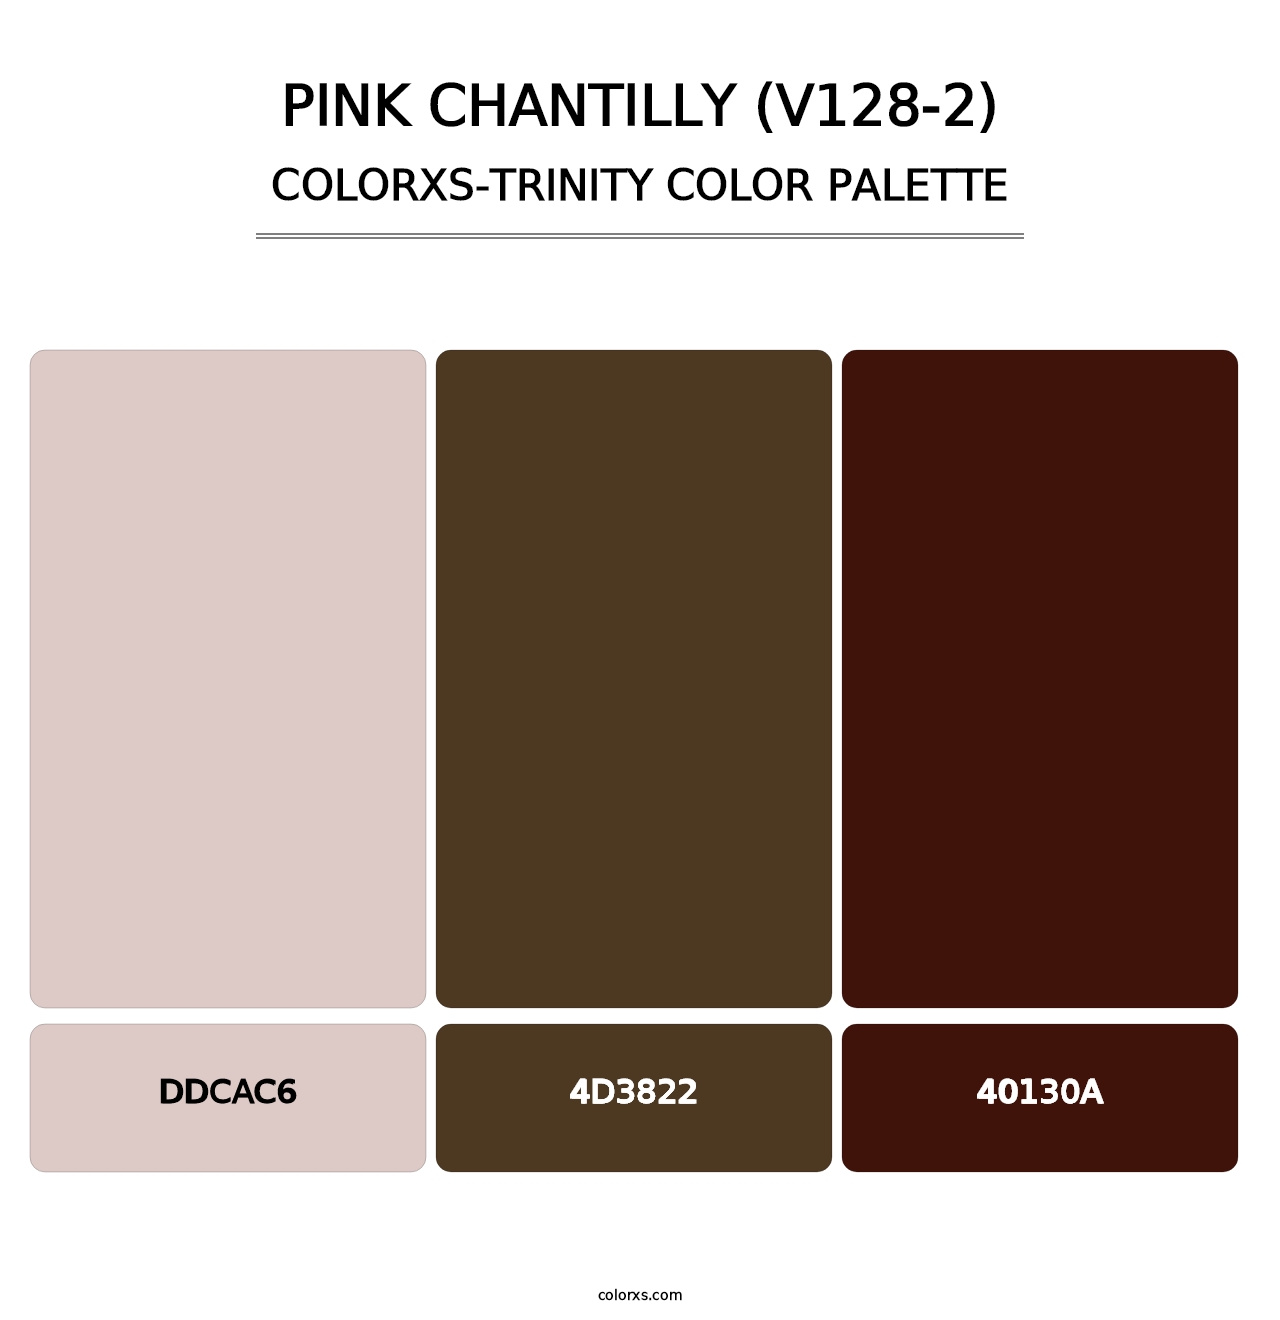 Pink Chantilly (V128-2) - Colorxs Trinity Palette